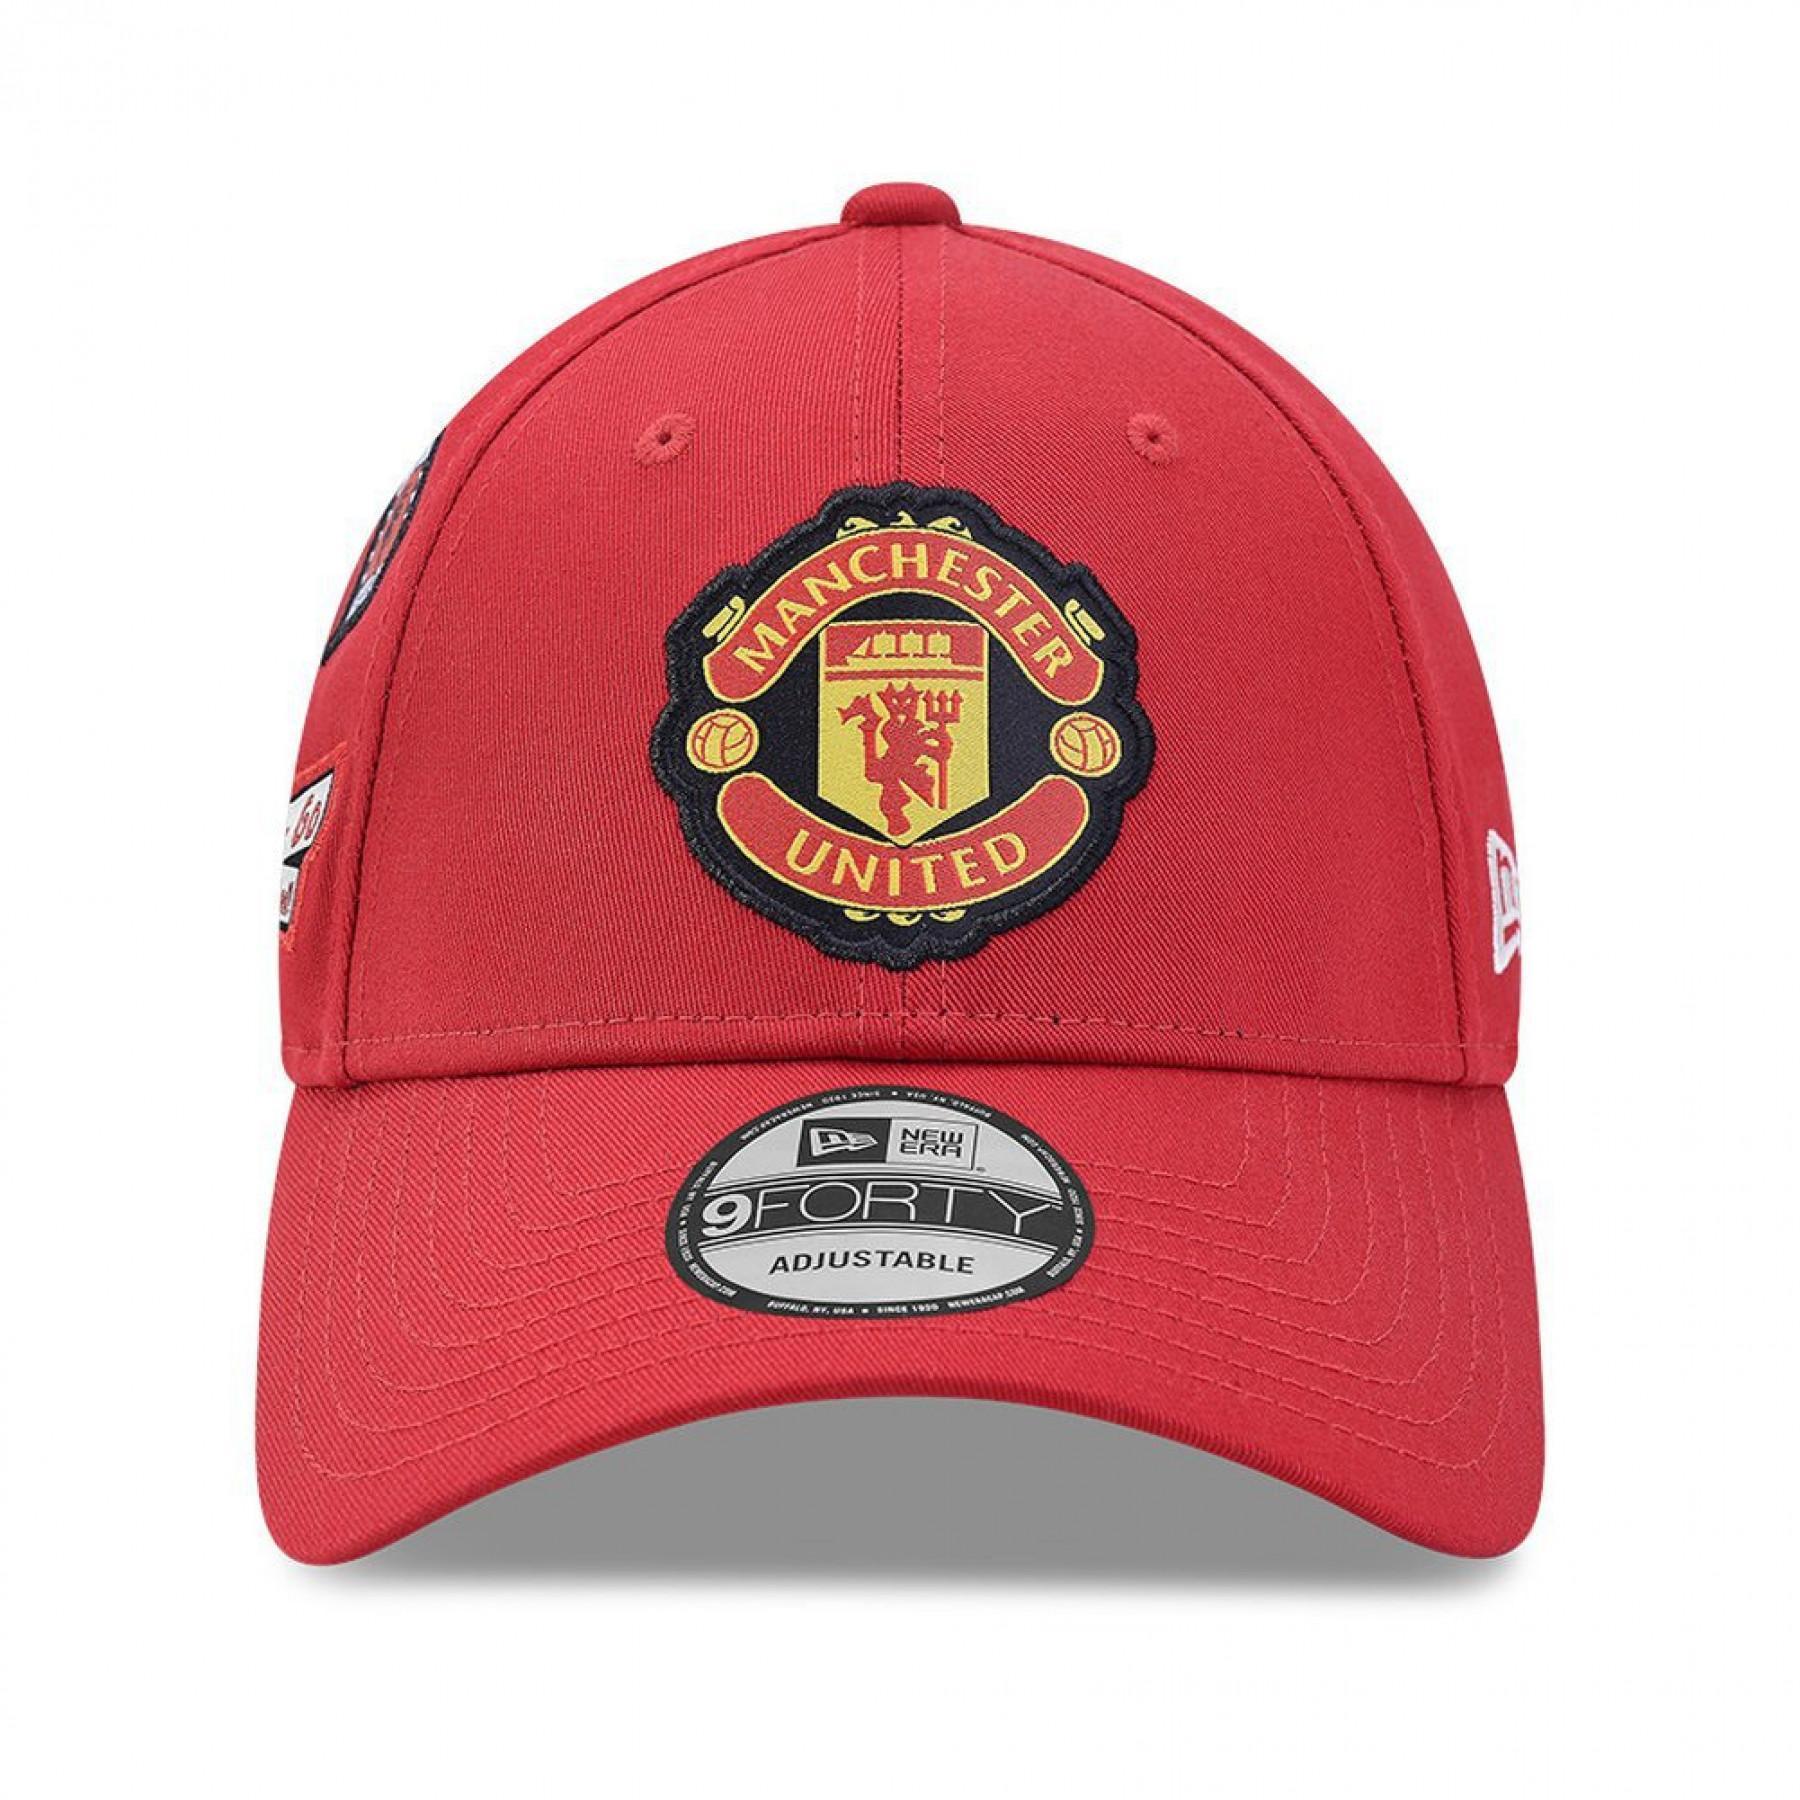 Cap Manchester United multi patch 940